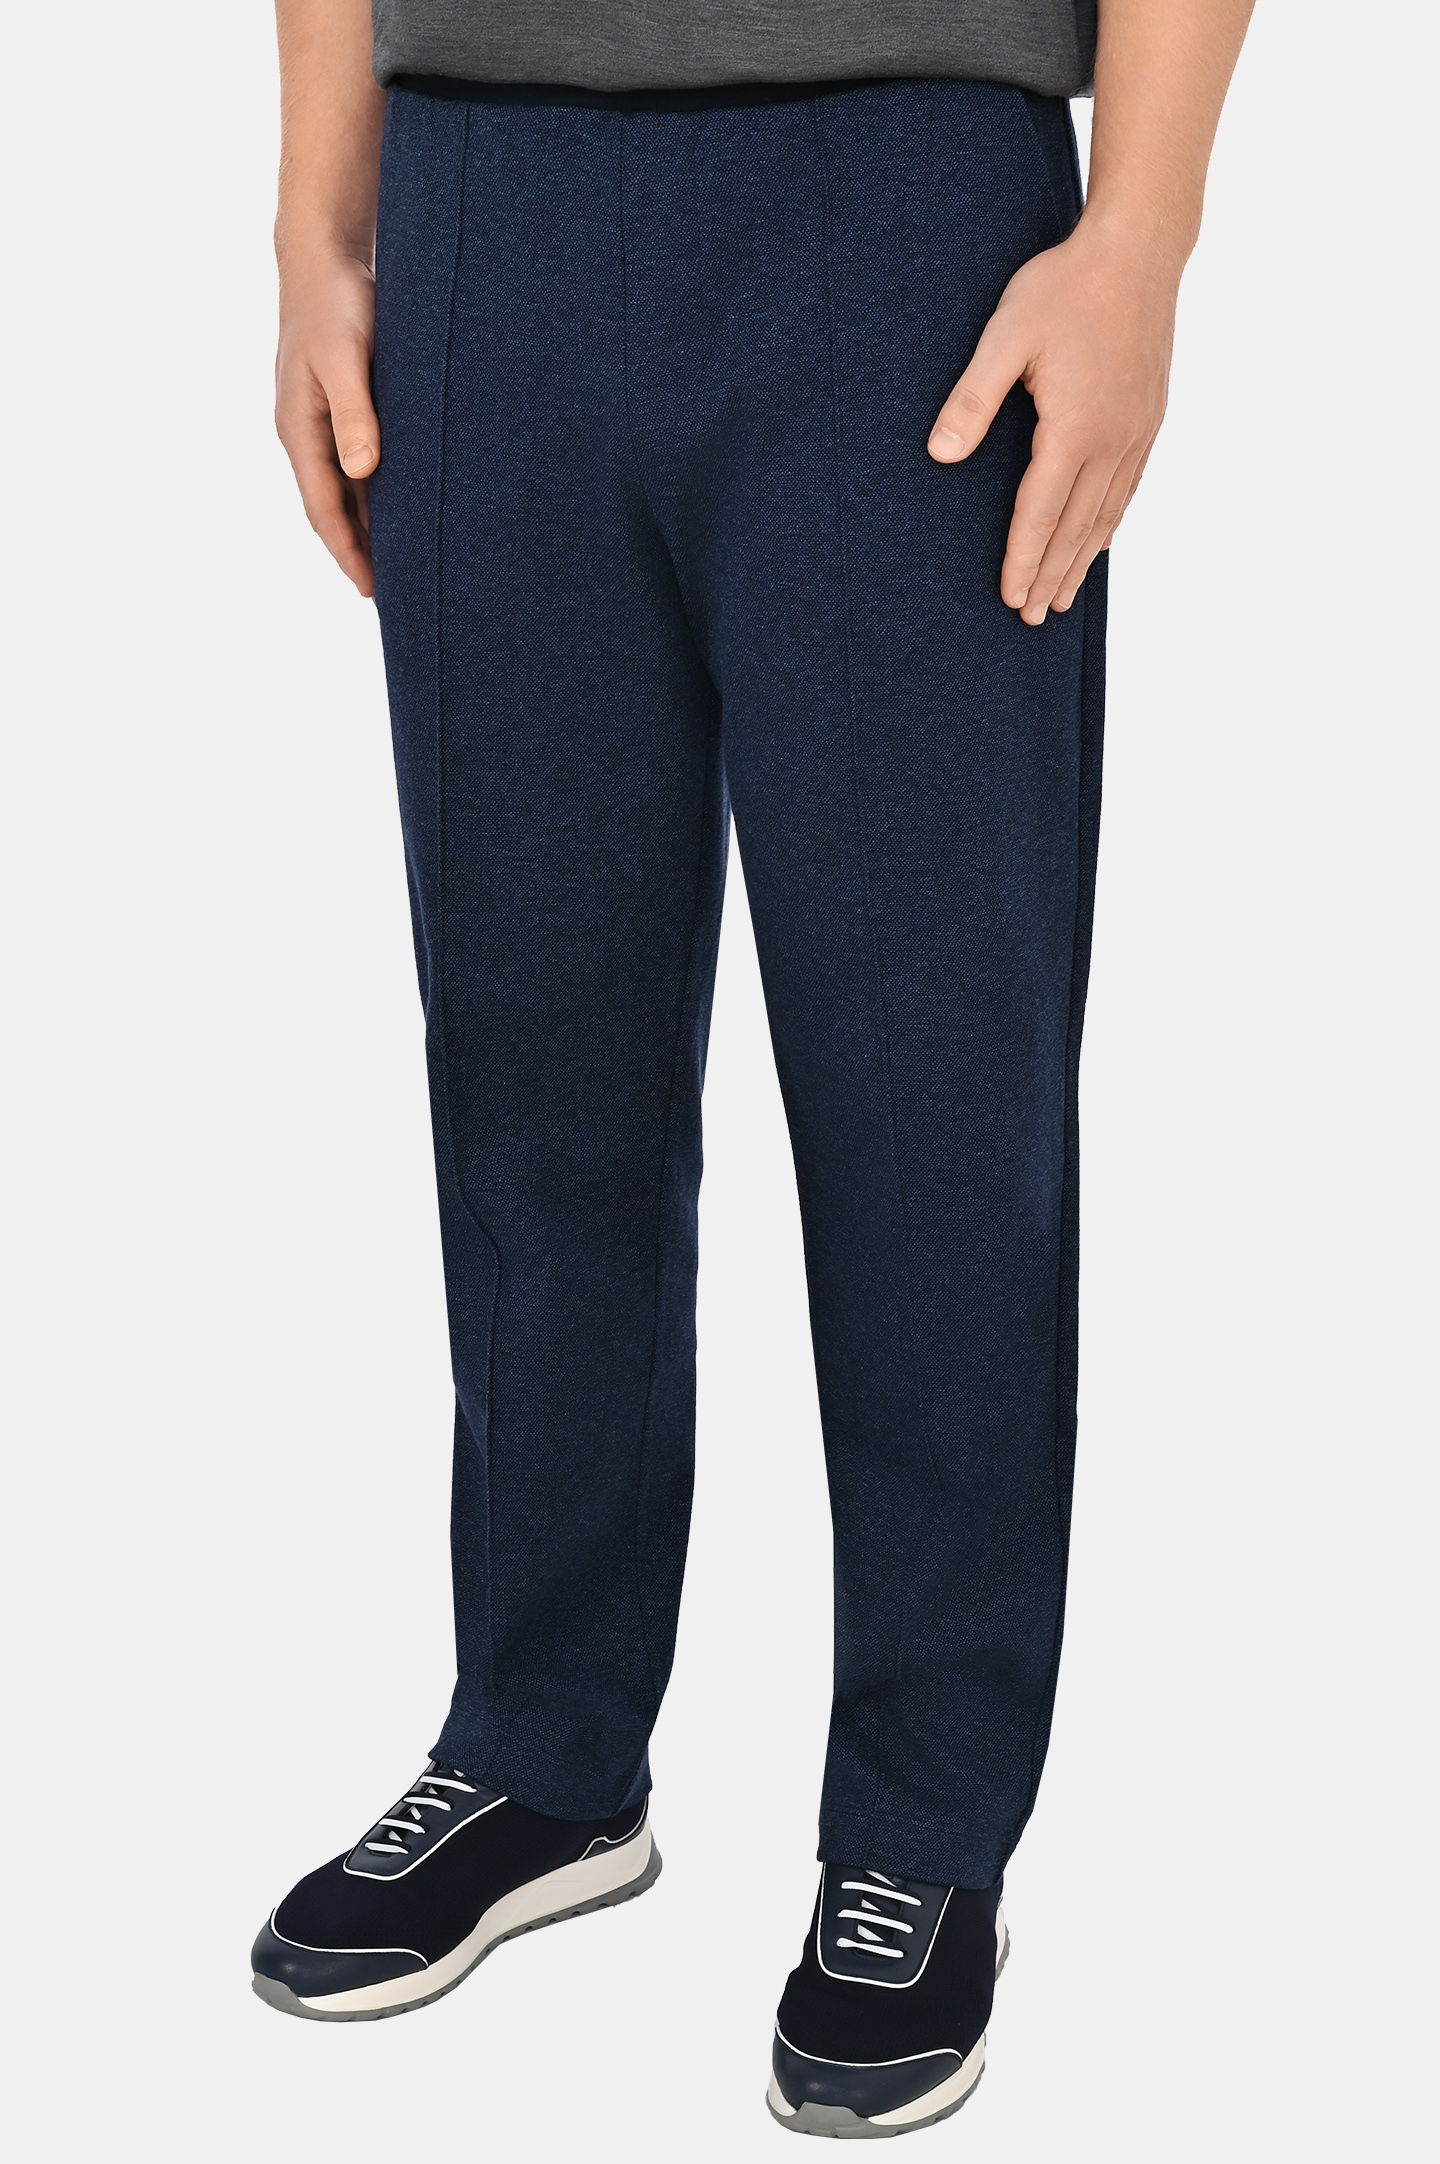 Спортивные хлопоковые брюки со стрелками CANALI MJ02044 T0836, цвет: Темно-синий, Мужской